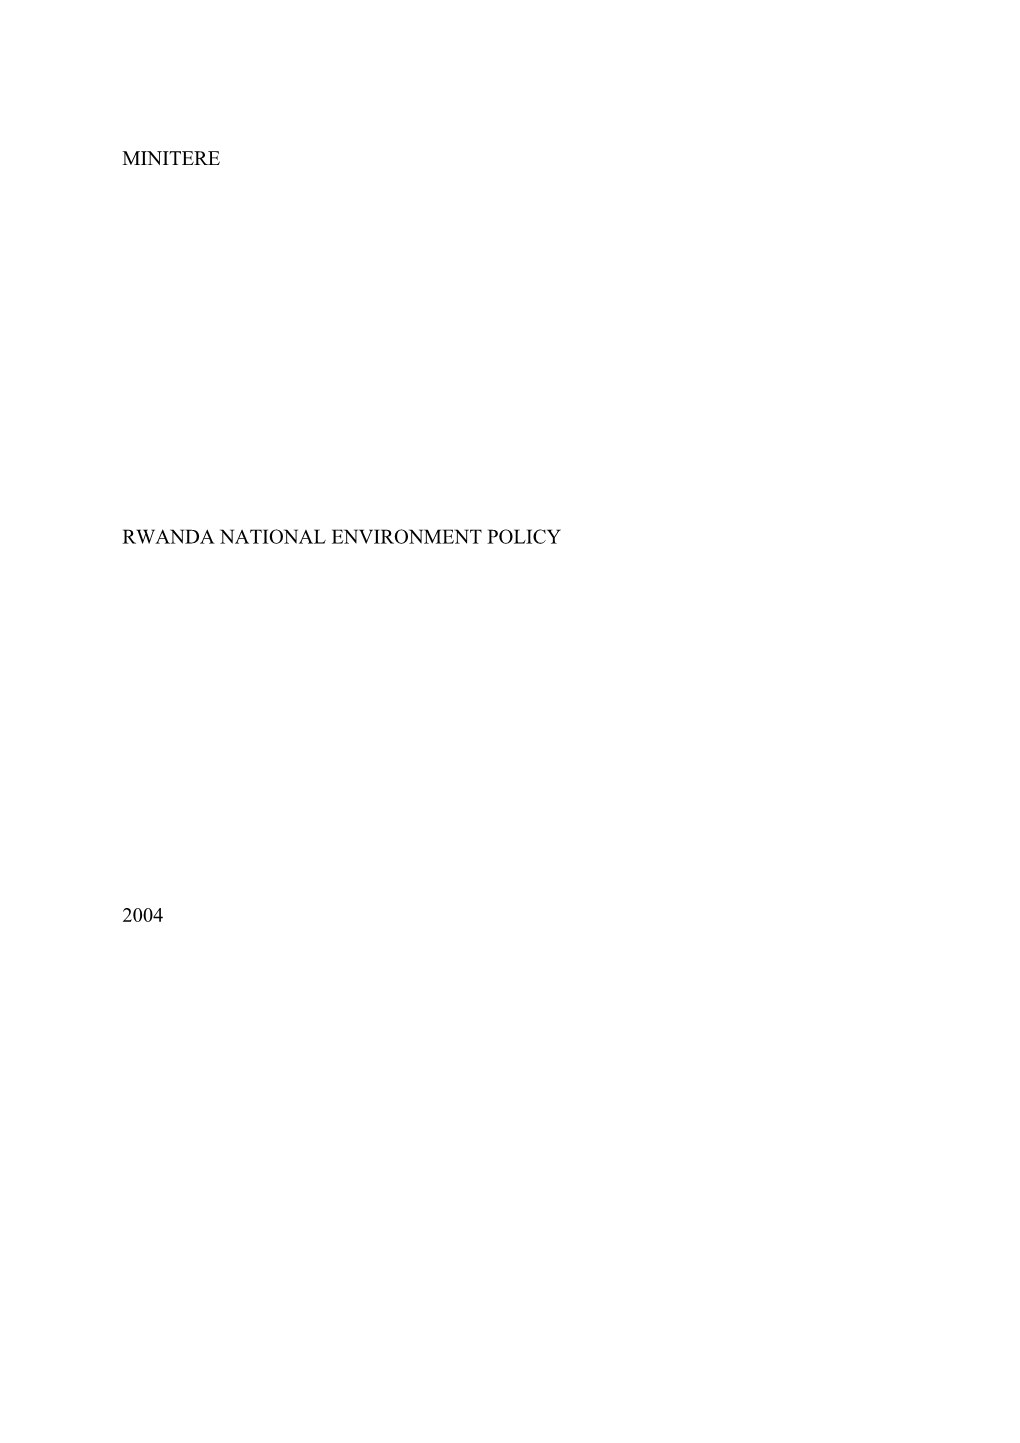 Rwanda National Environment Policy